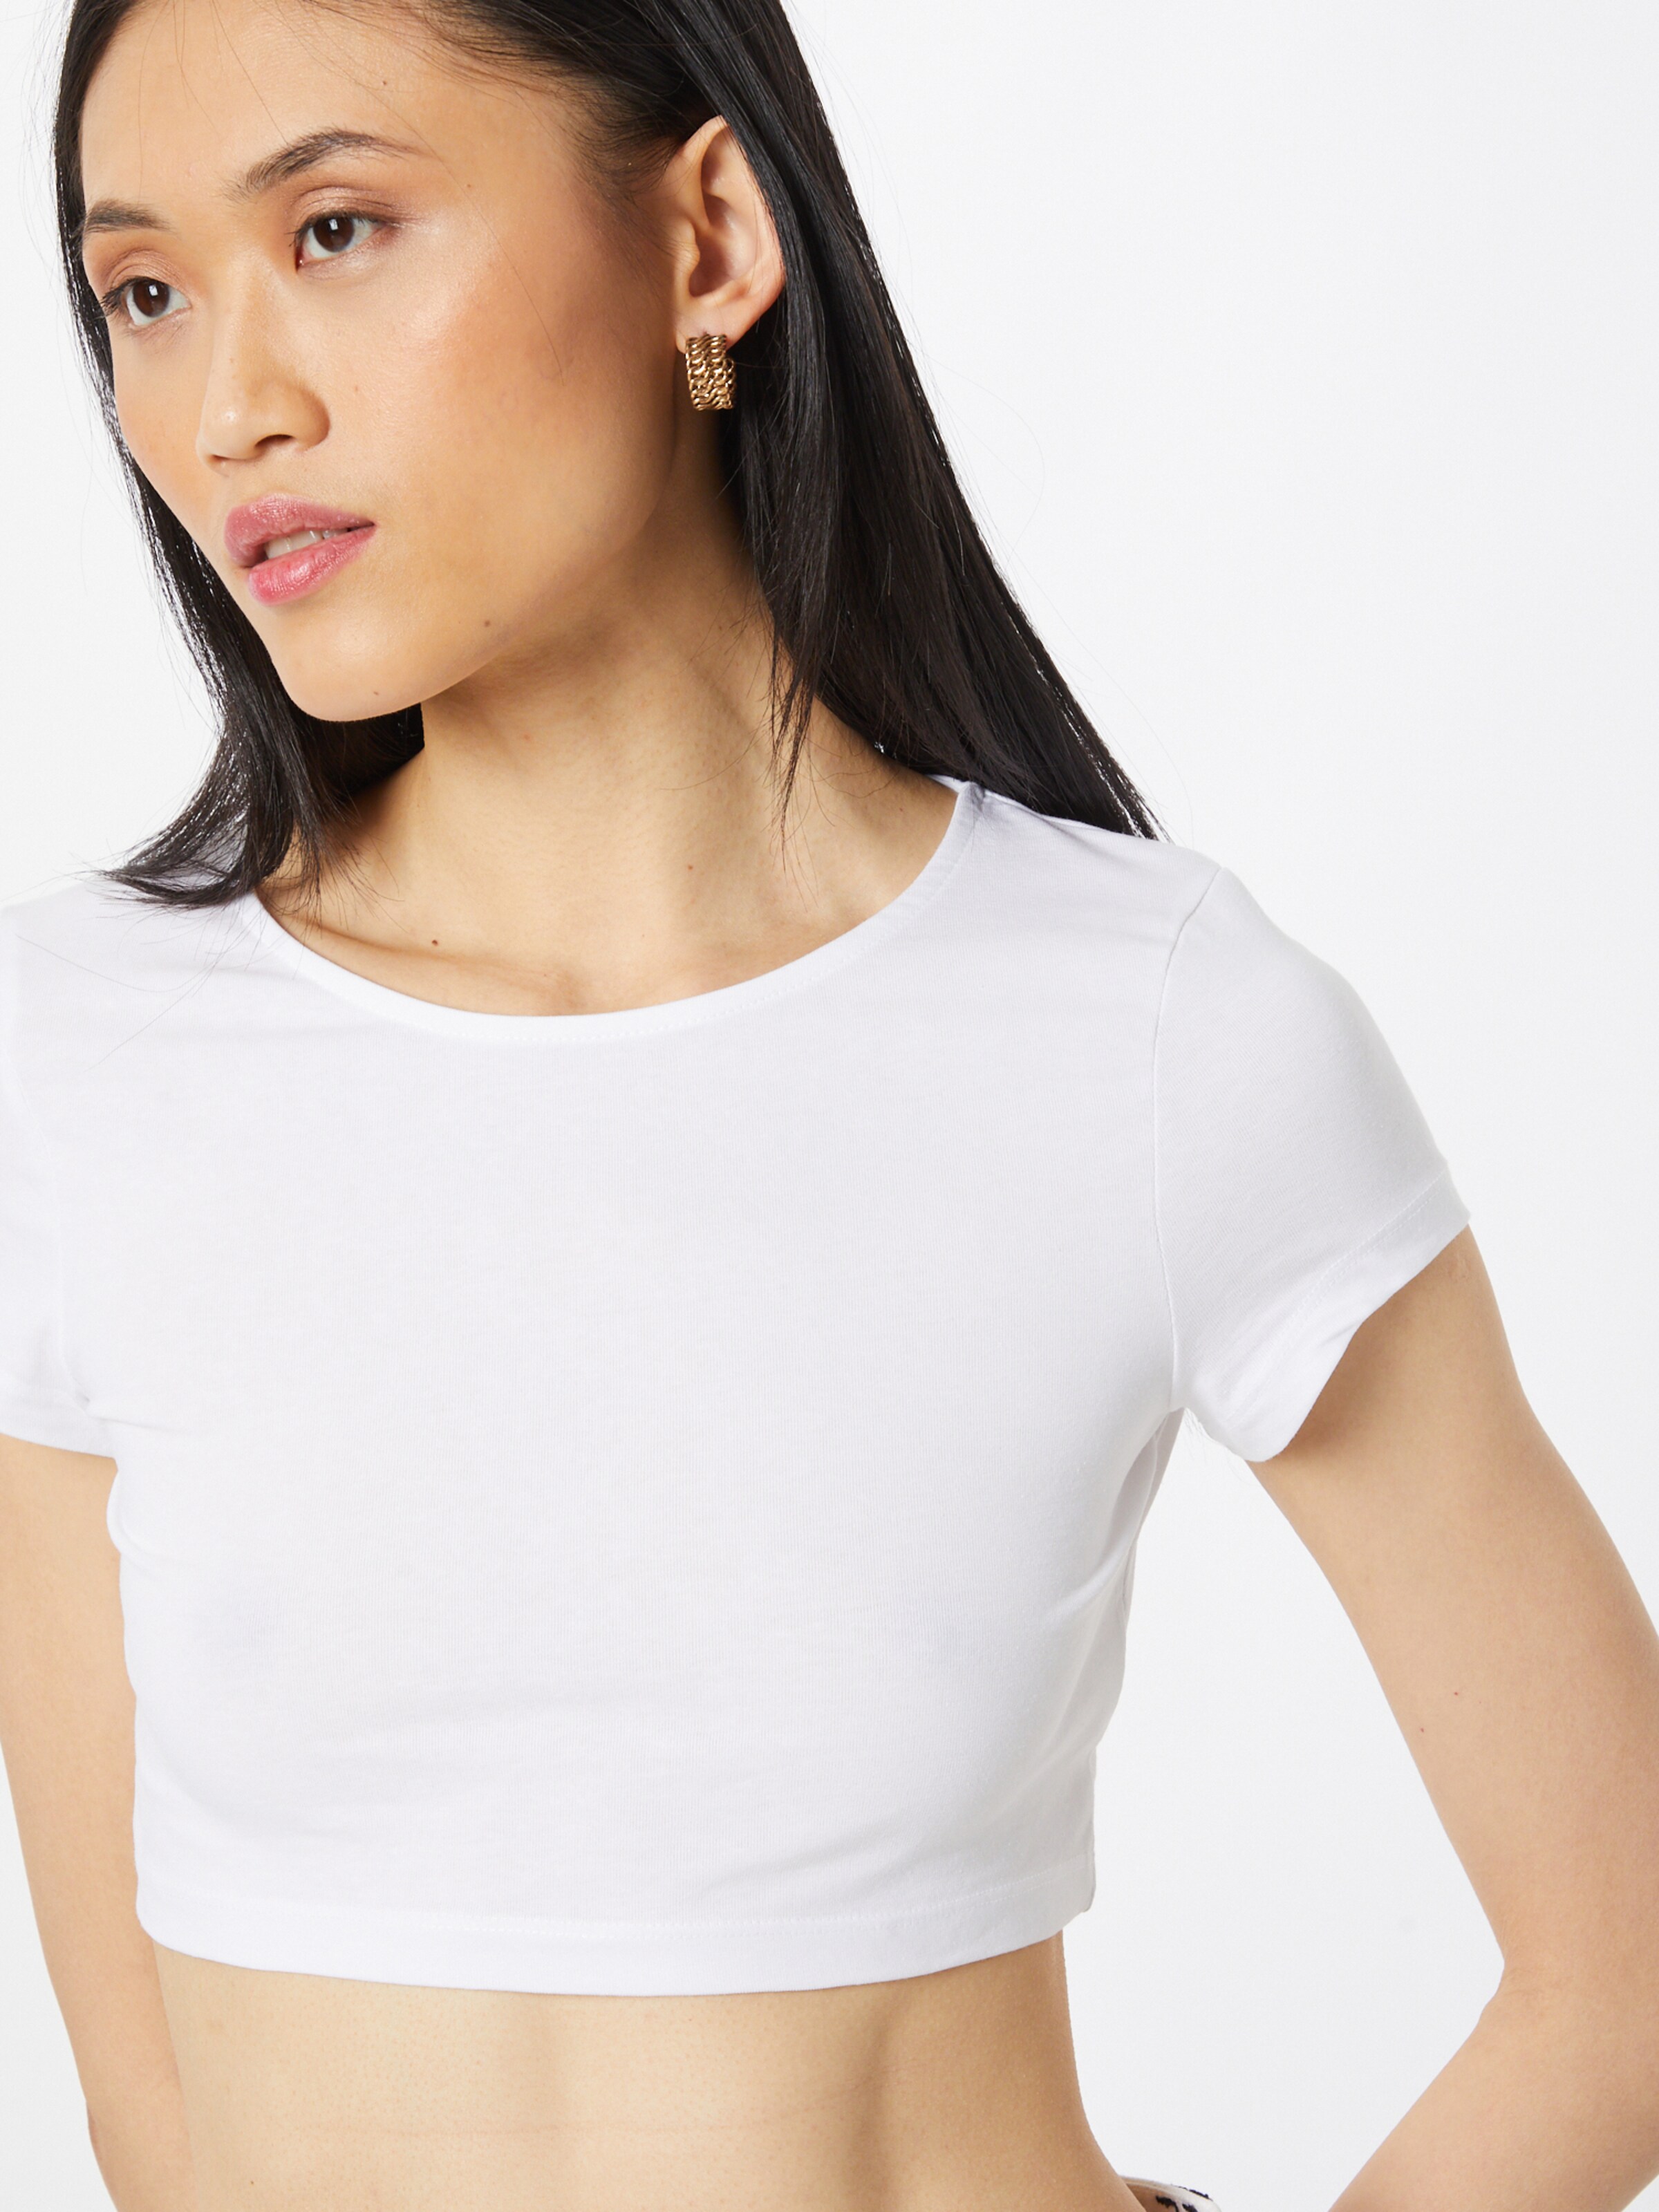 Frauen Shirts & Tops WEEKDAY T-Shirt in Graumeliert, Weiß - OC47095